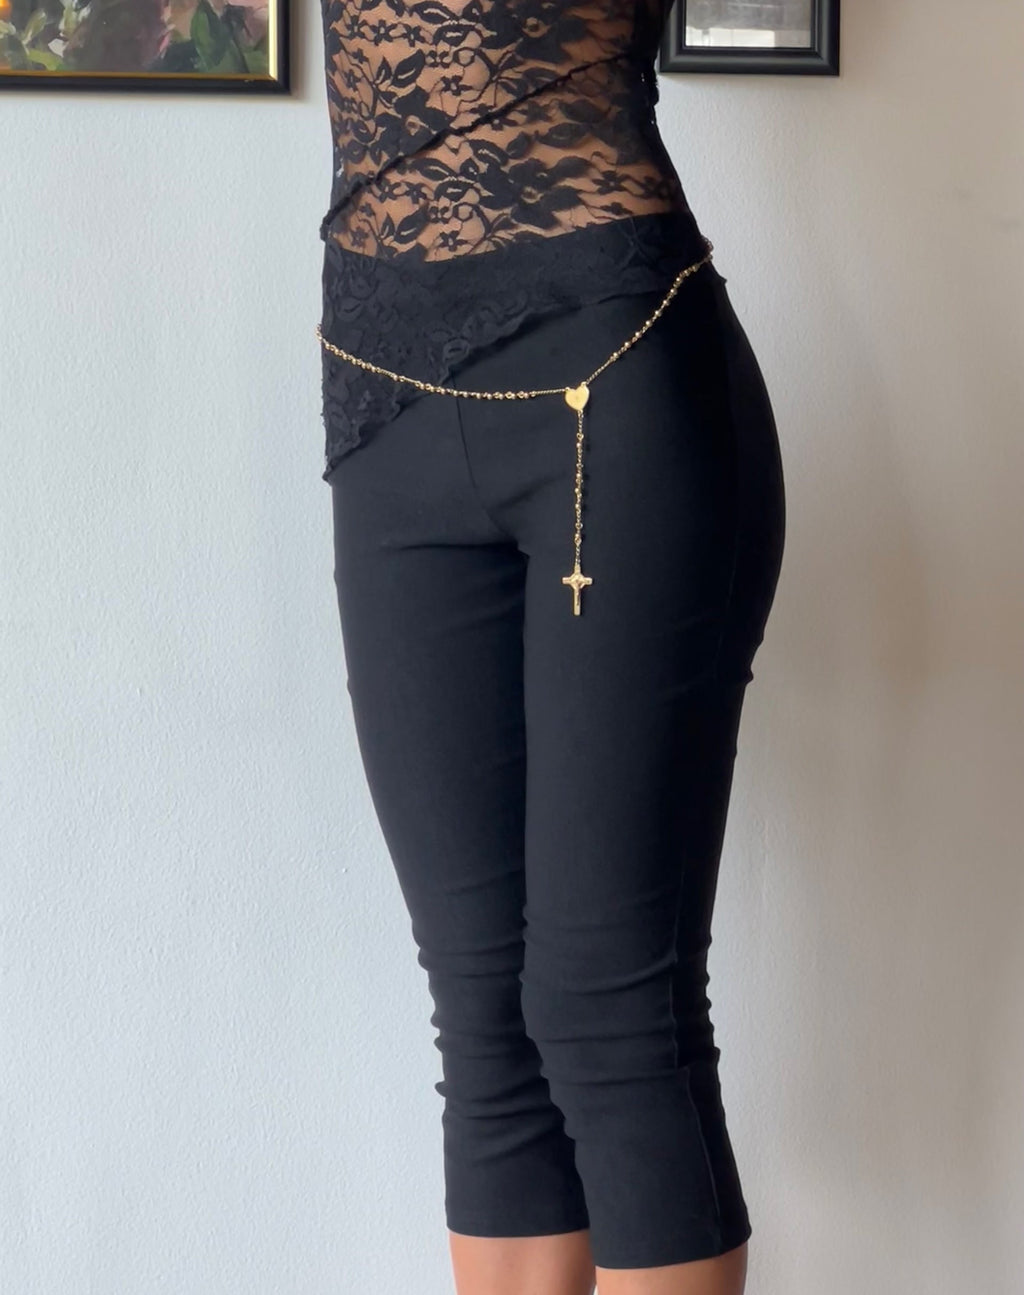 Asla - Pantalon capri court en tailleur extensible - Noir